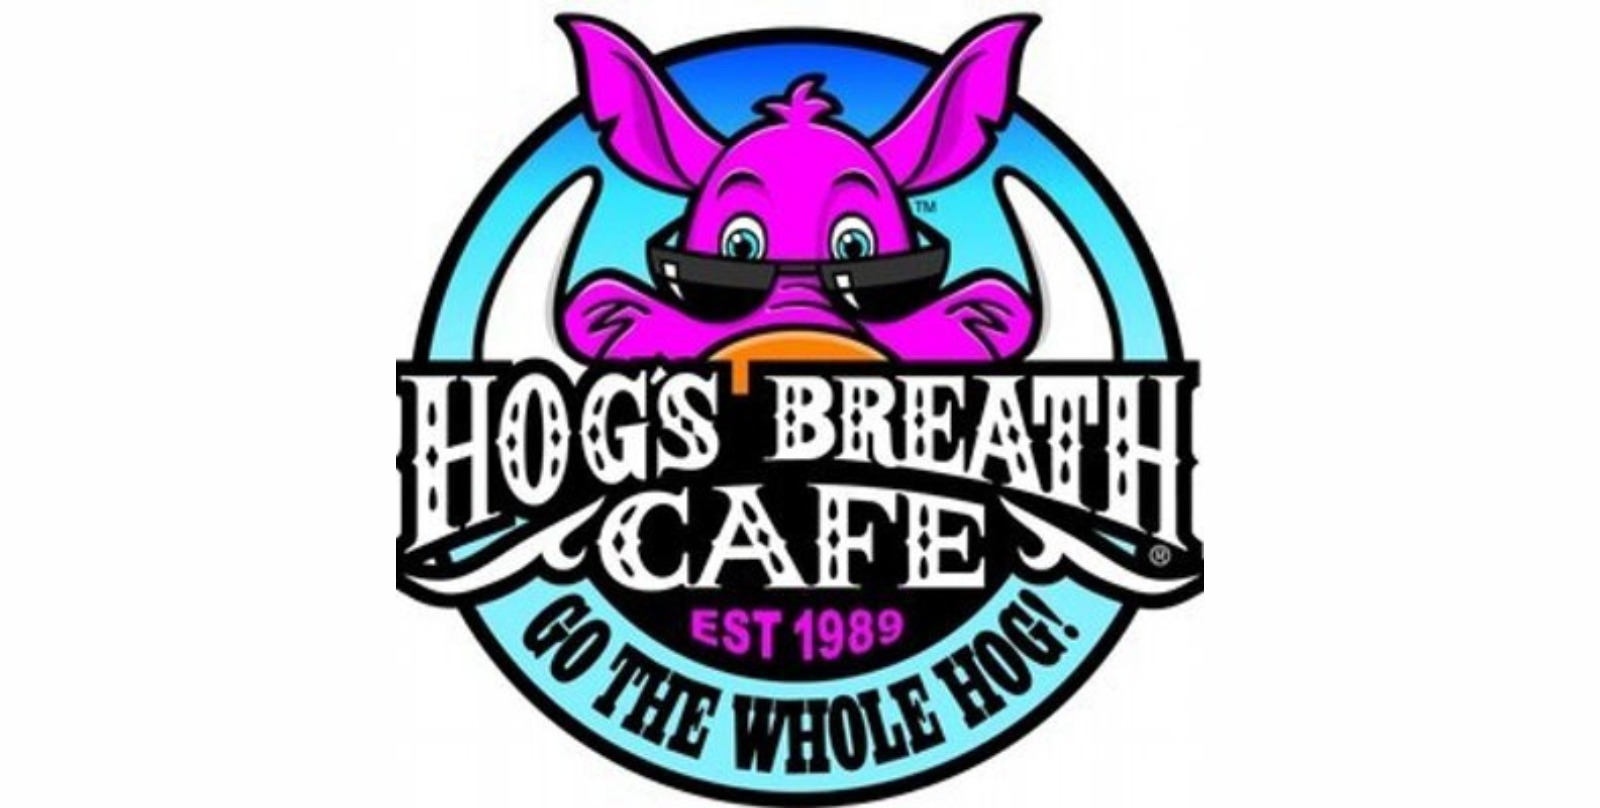 hog's cafe menu prices australia